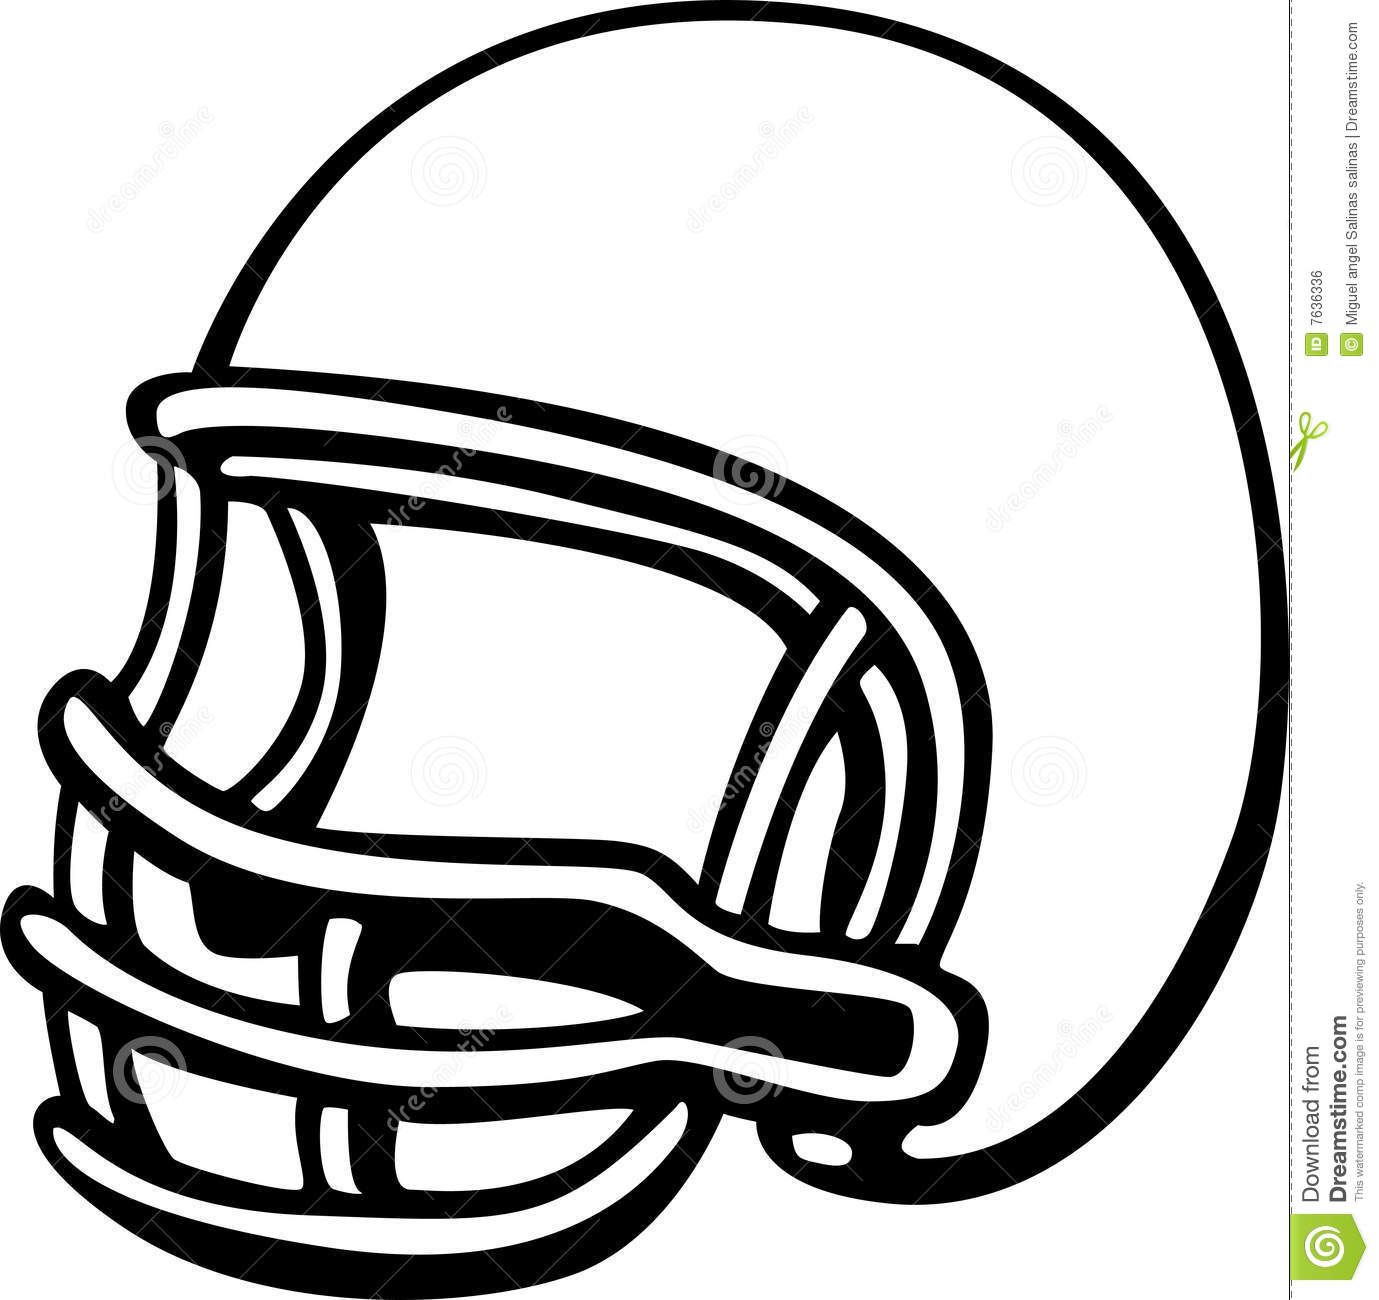 Black and White Football Helmet